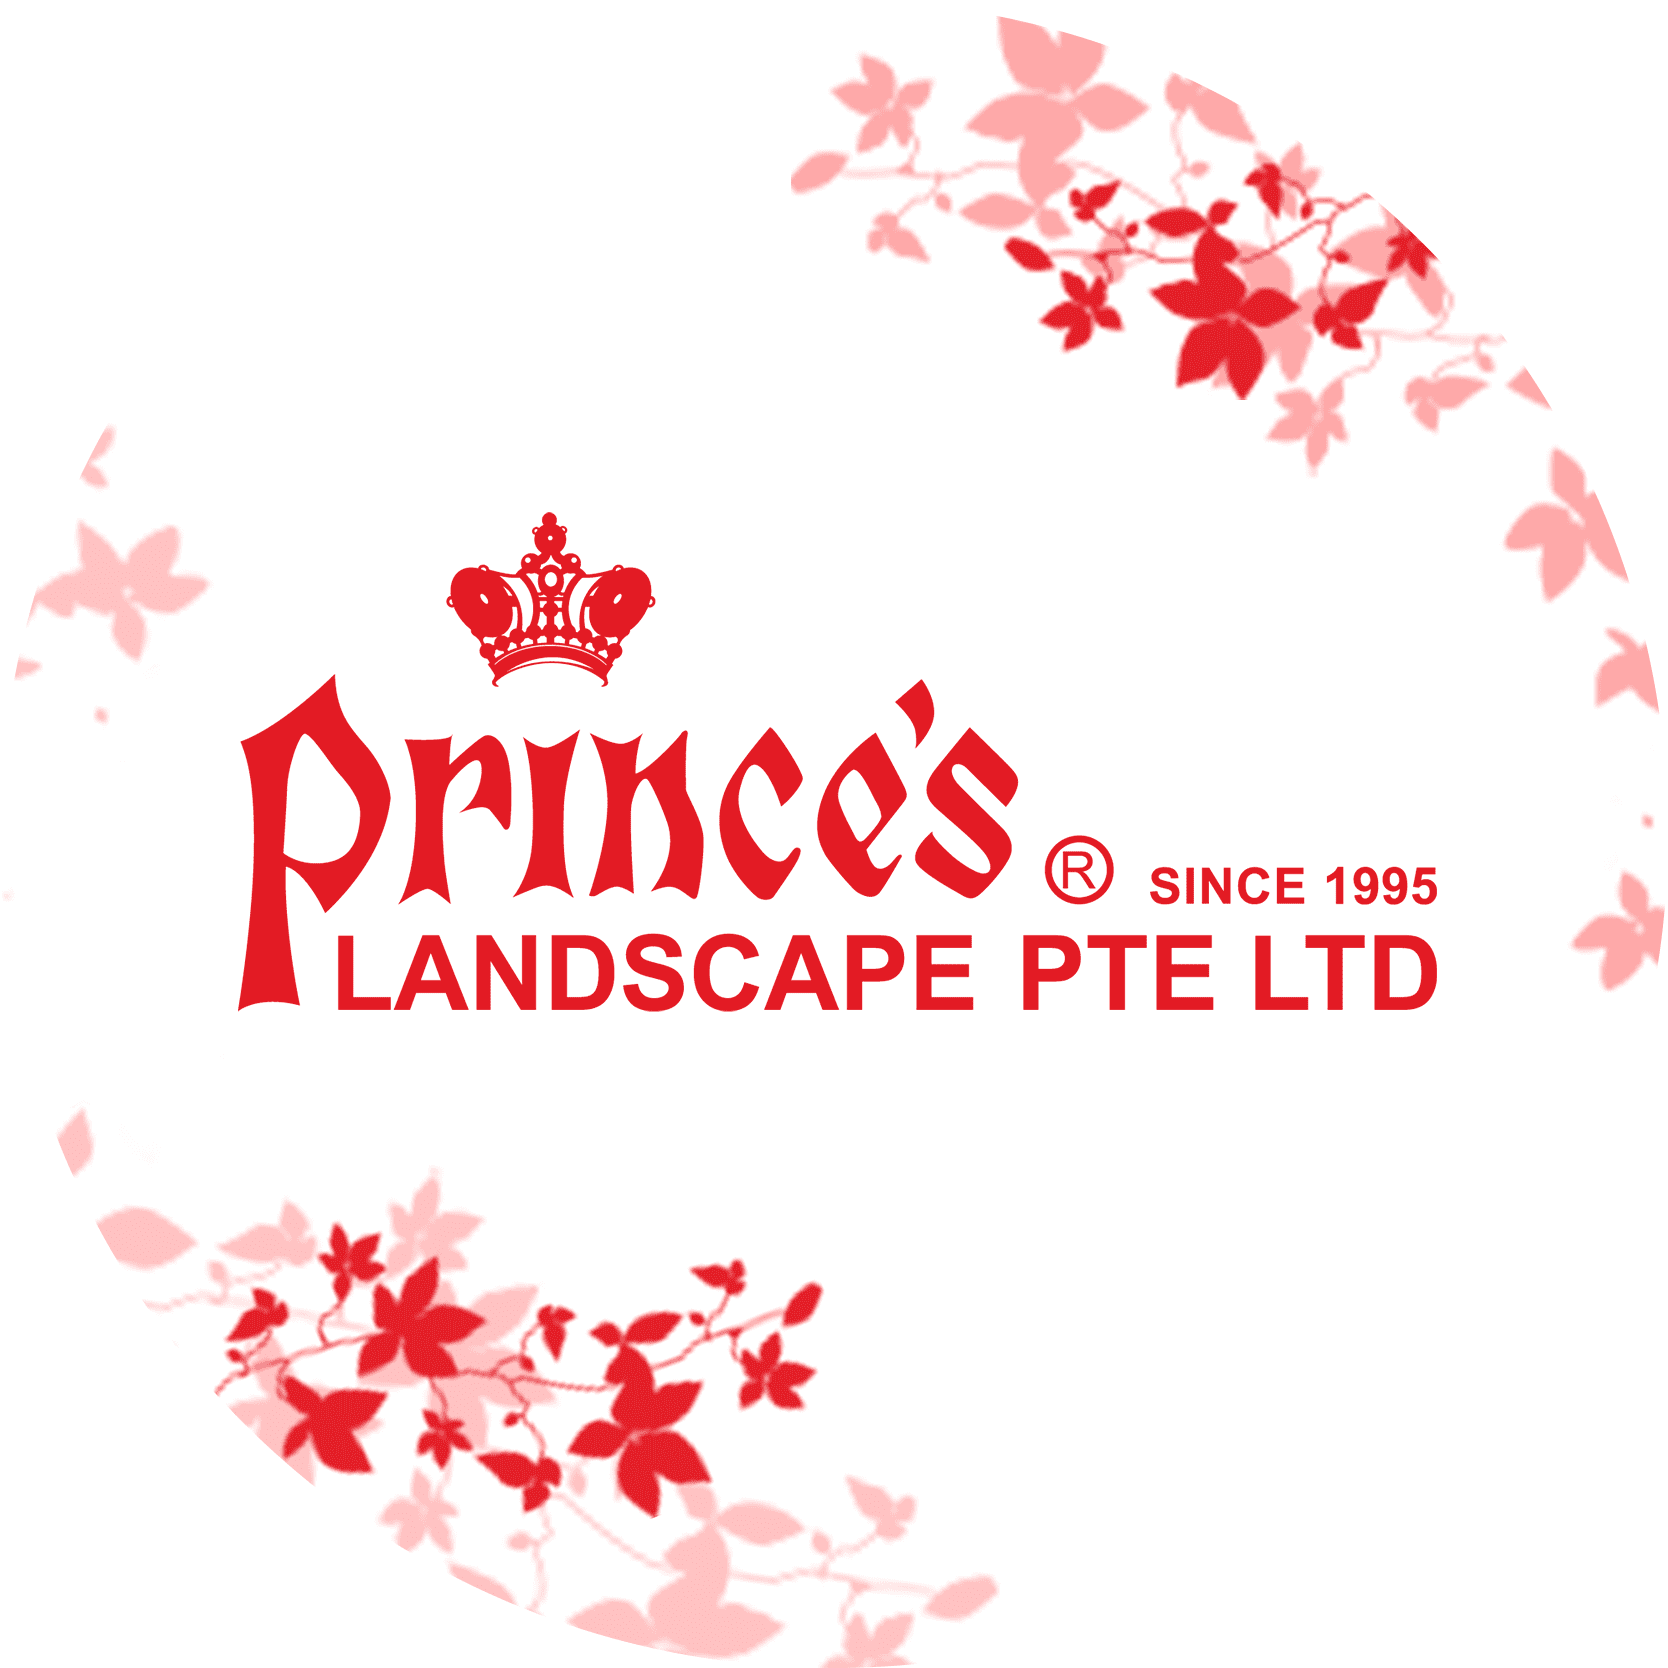 Prince's Landscape Pte. Ltd. company logo